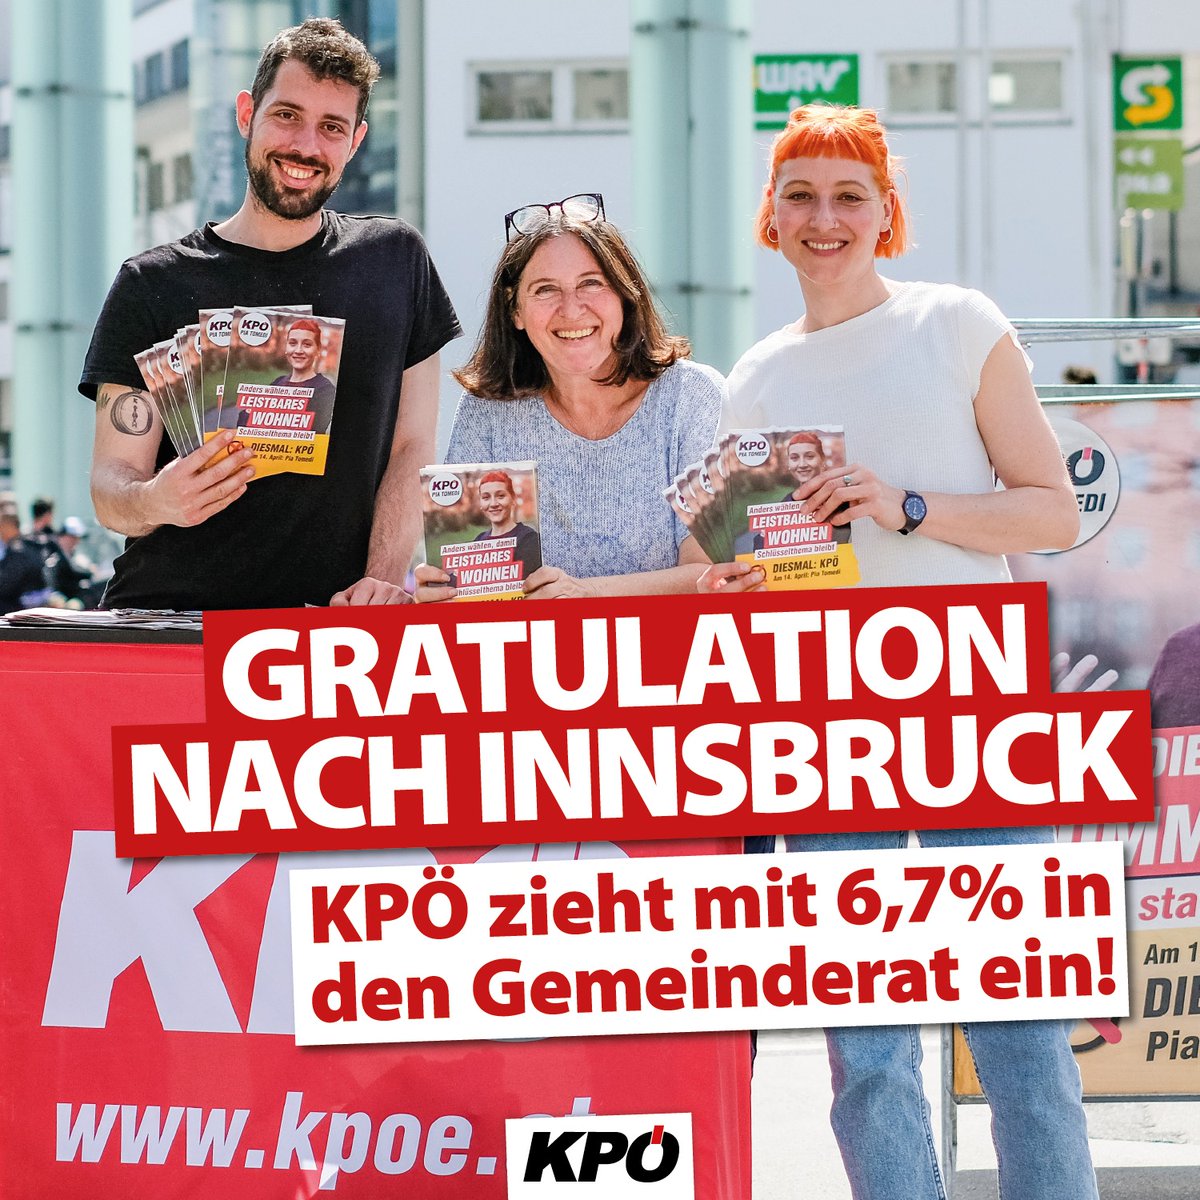 Unglaublich!!! Herzliche Gratulation an @piatomedi und ihr Team der #KPÖ #Innsbruck! Mit sensationellen 6,7 % gelingt der Einzug in den Gemeinderat. So kann's weitergehen!